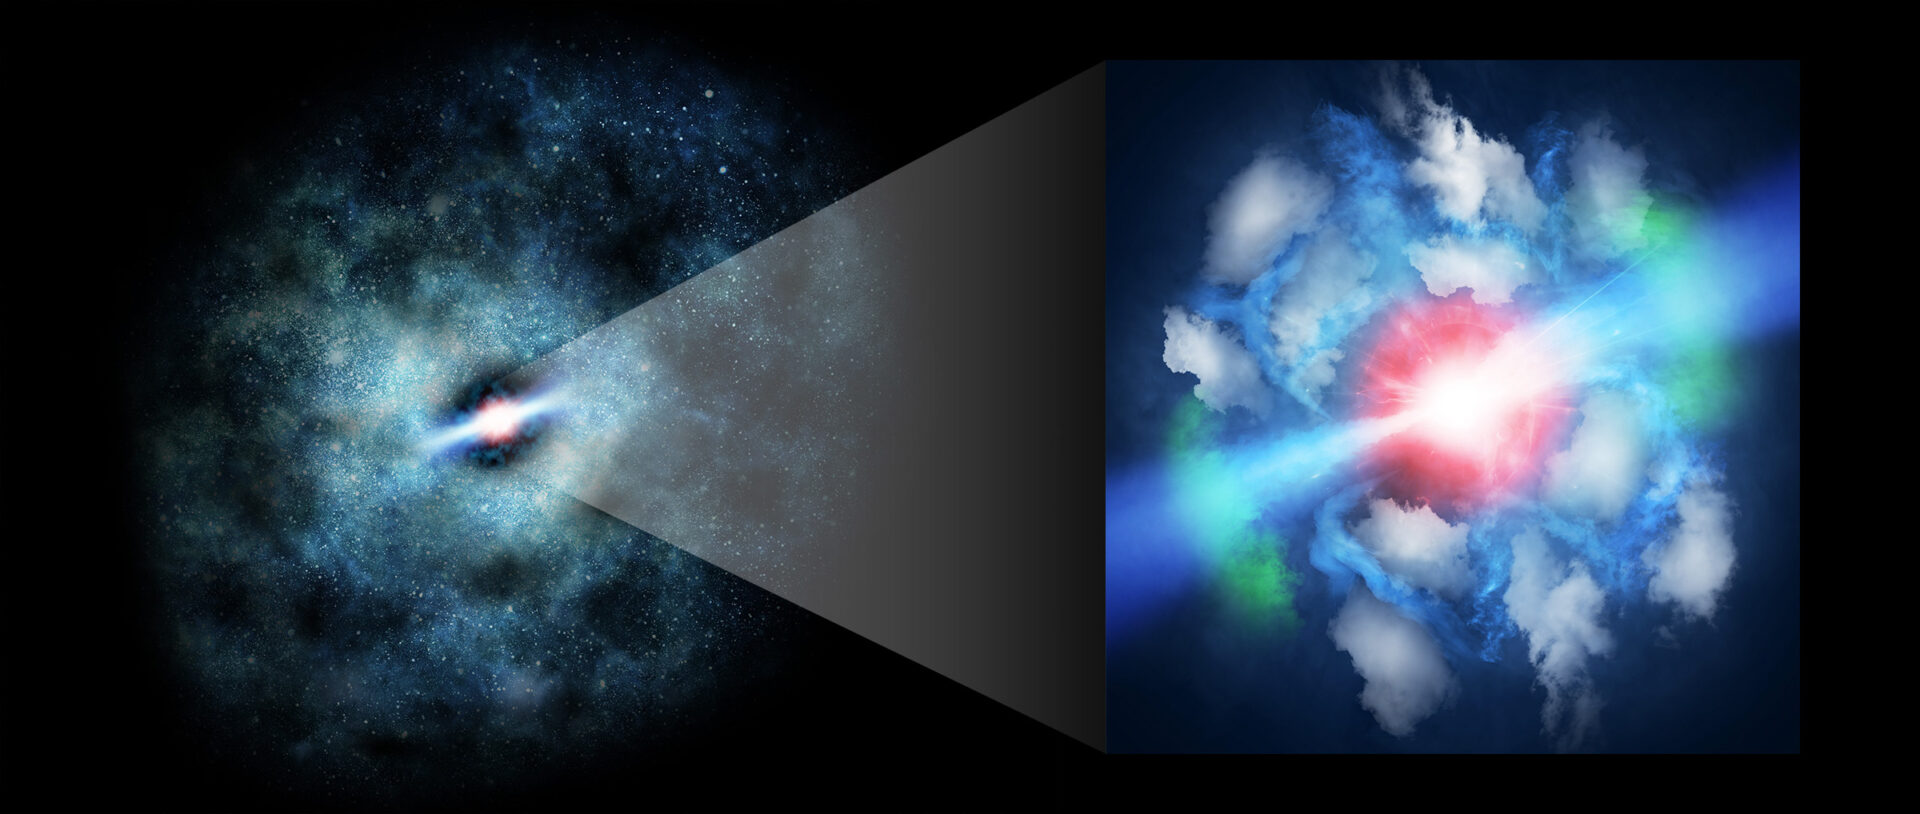 Representación artística de MG J0414+0534. El agujero negro supermasivo en el centro acaba de emitir unos poderosos chorros que están perturbando el gas circundante en la galaxia huésped. Créditos: Universidad Kindai